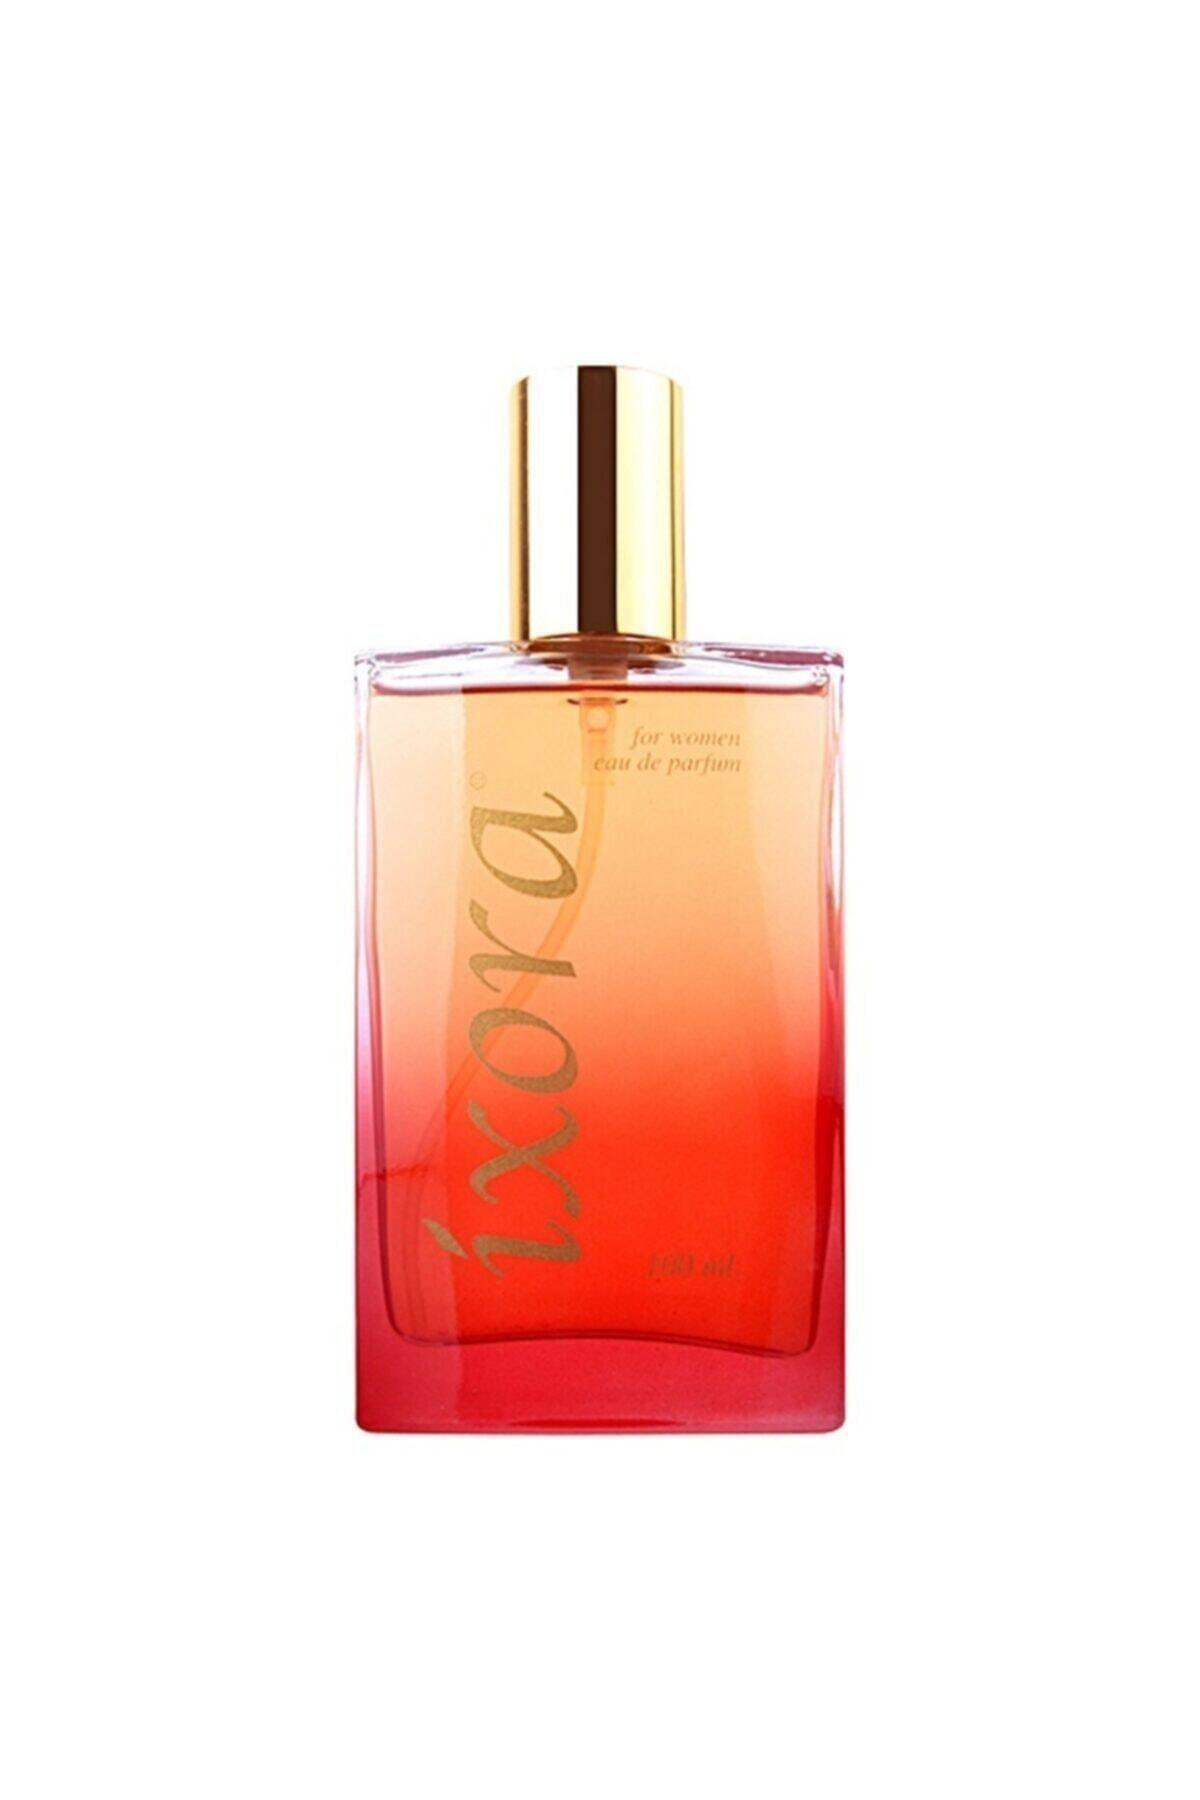 İxora B240 Fame EDP Portakal Çiçeği-Yasemin Kadın Parfüm 100 ml